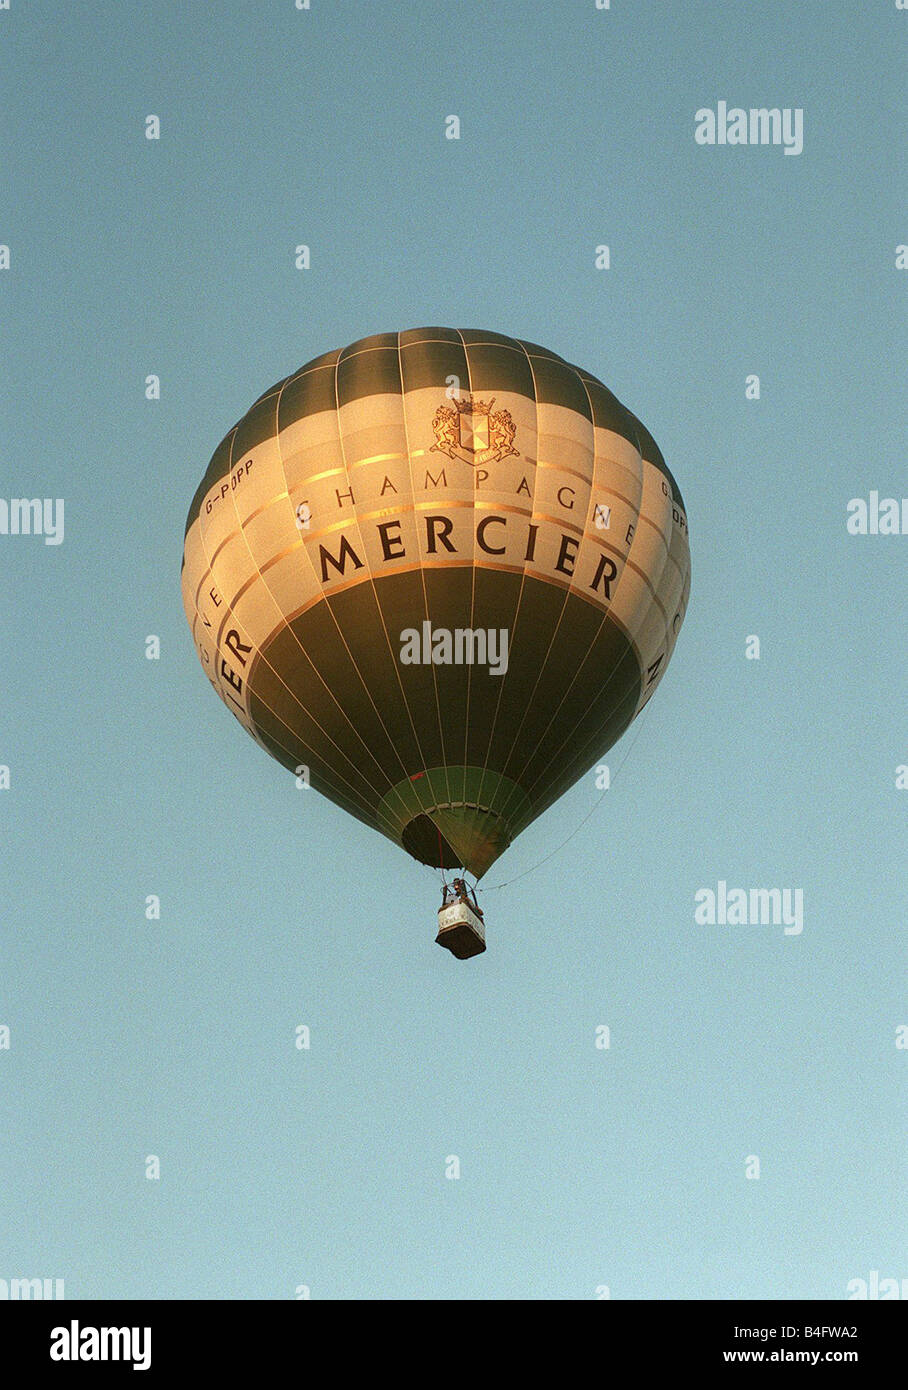 Un ballon à air chaud qui porte le nom de Mercier Champagne décolle  d'Ashton Park à Bristol Bristol pendant le festival de ballons vers 1990  Photo Stock - Alamy